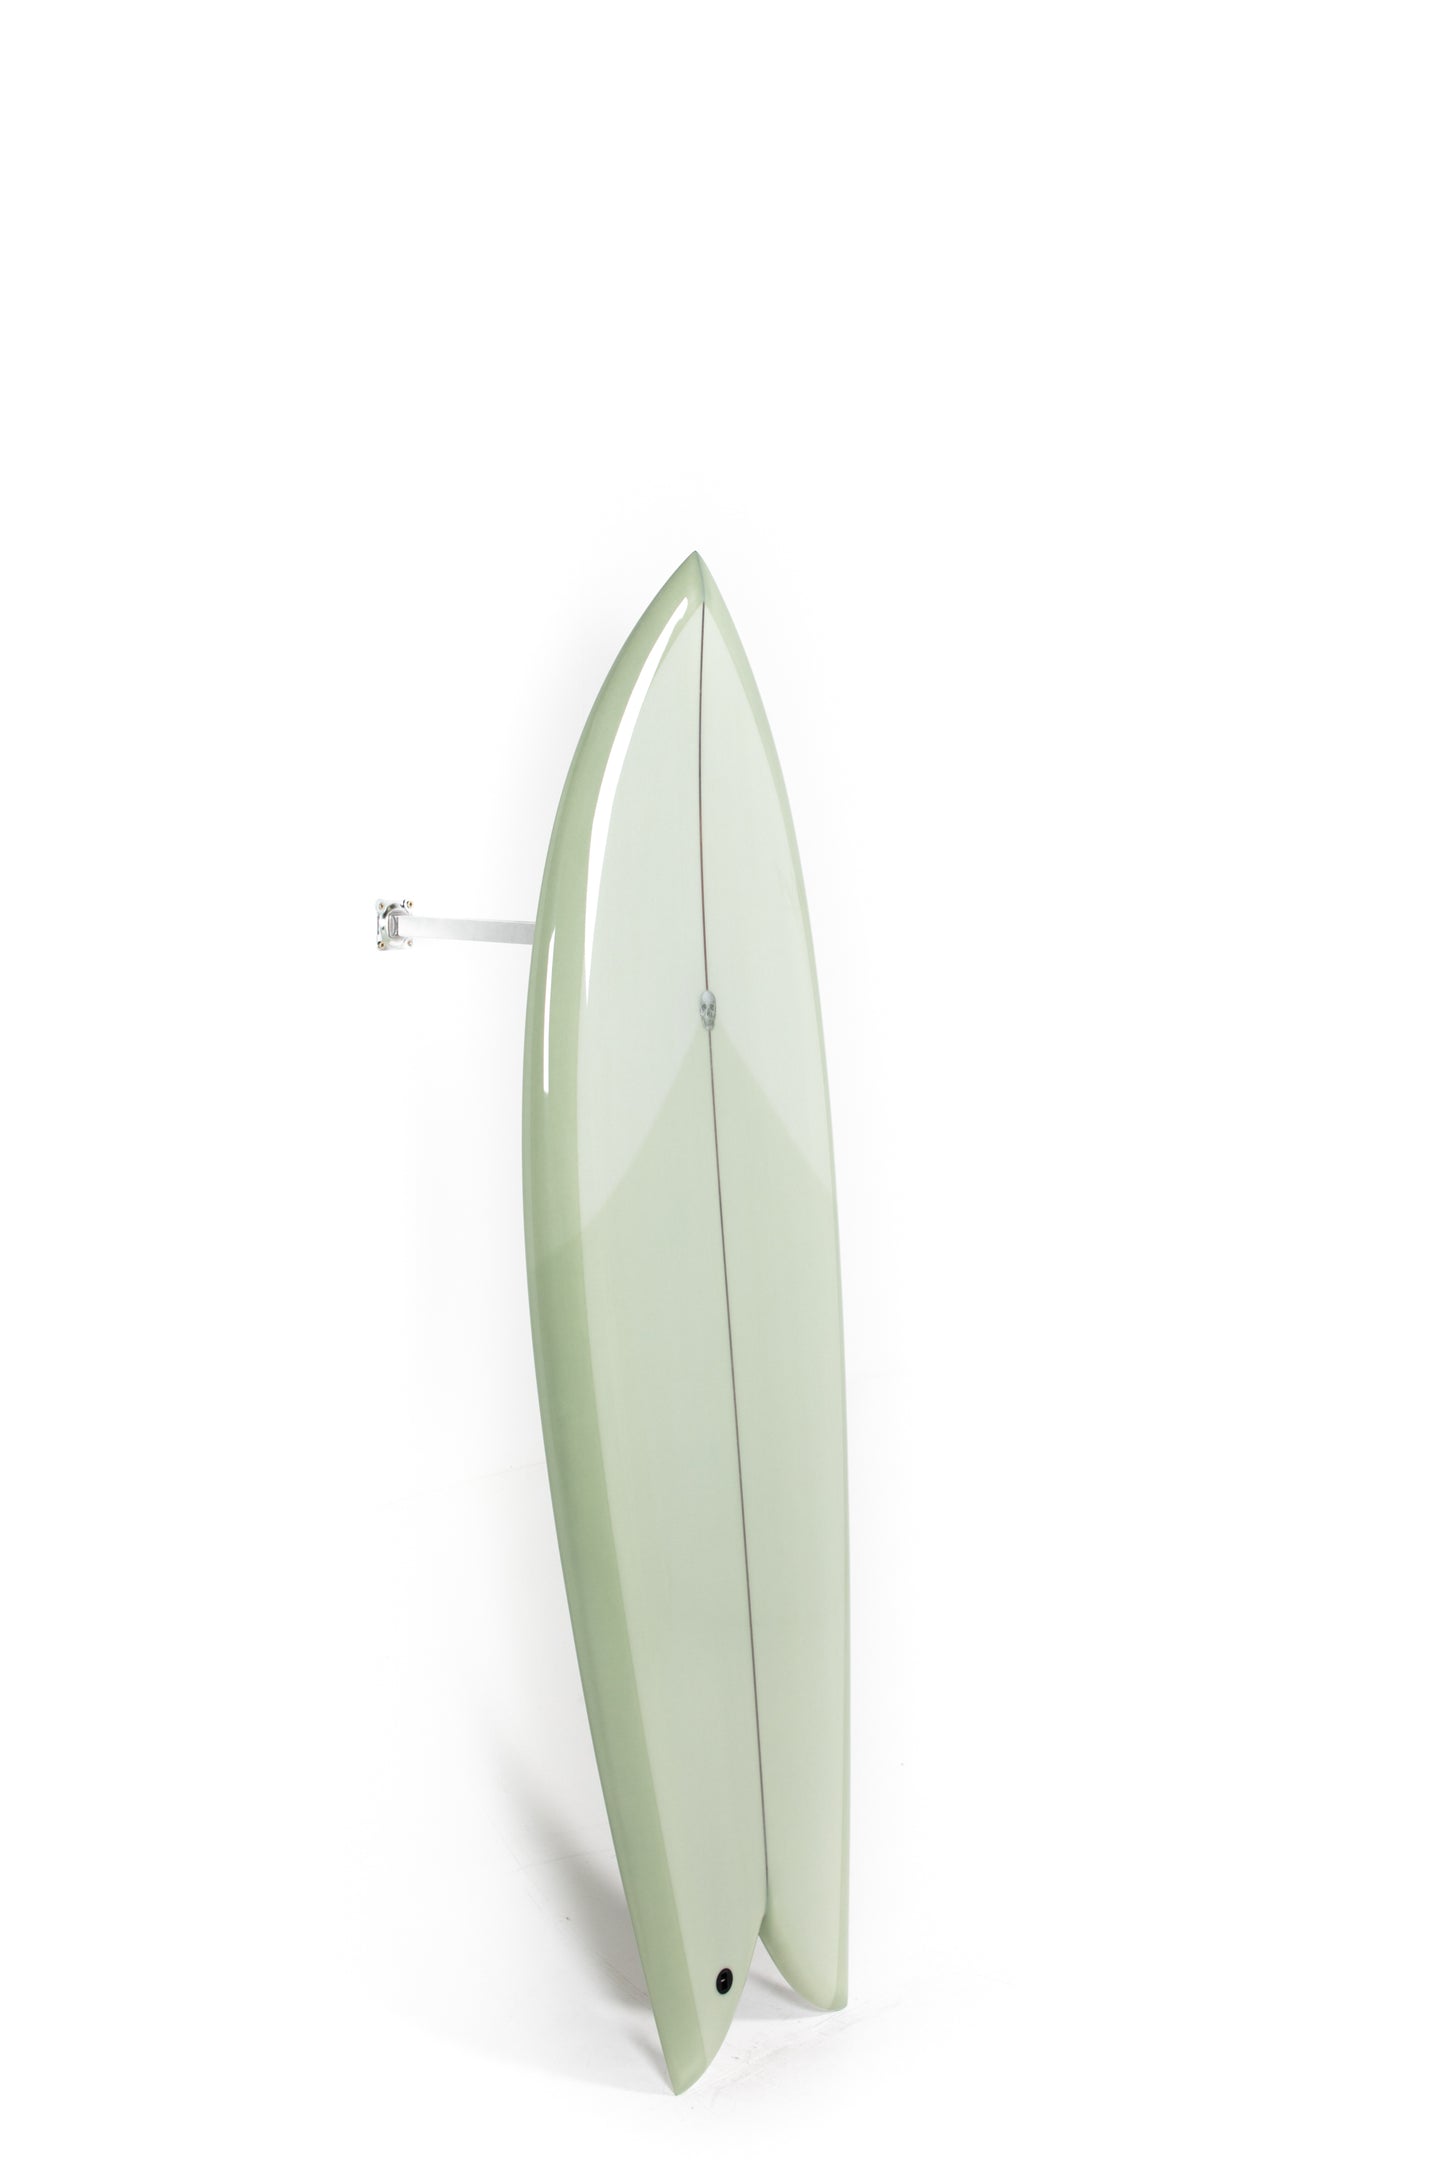 
                  
                    Pukas-Surf-Shop-Christenson-Surfboards-Chris-Fish-Chris-Christenson-5_6_-CX06028
                  
                